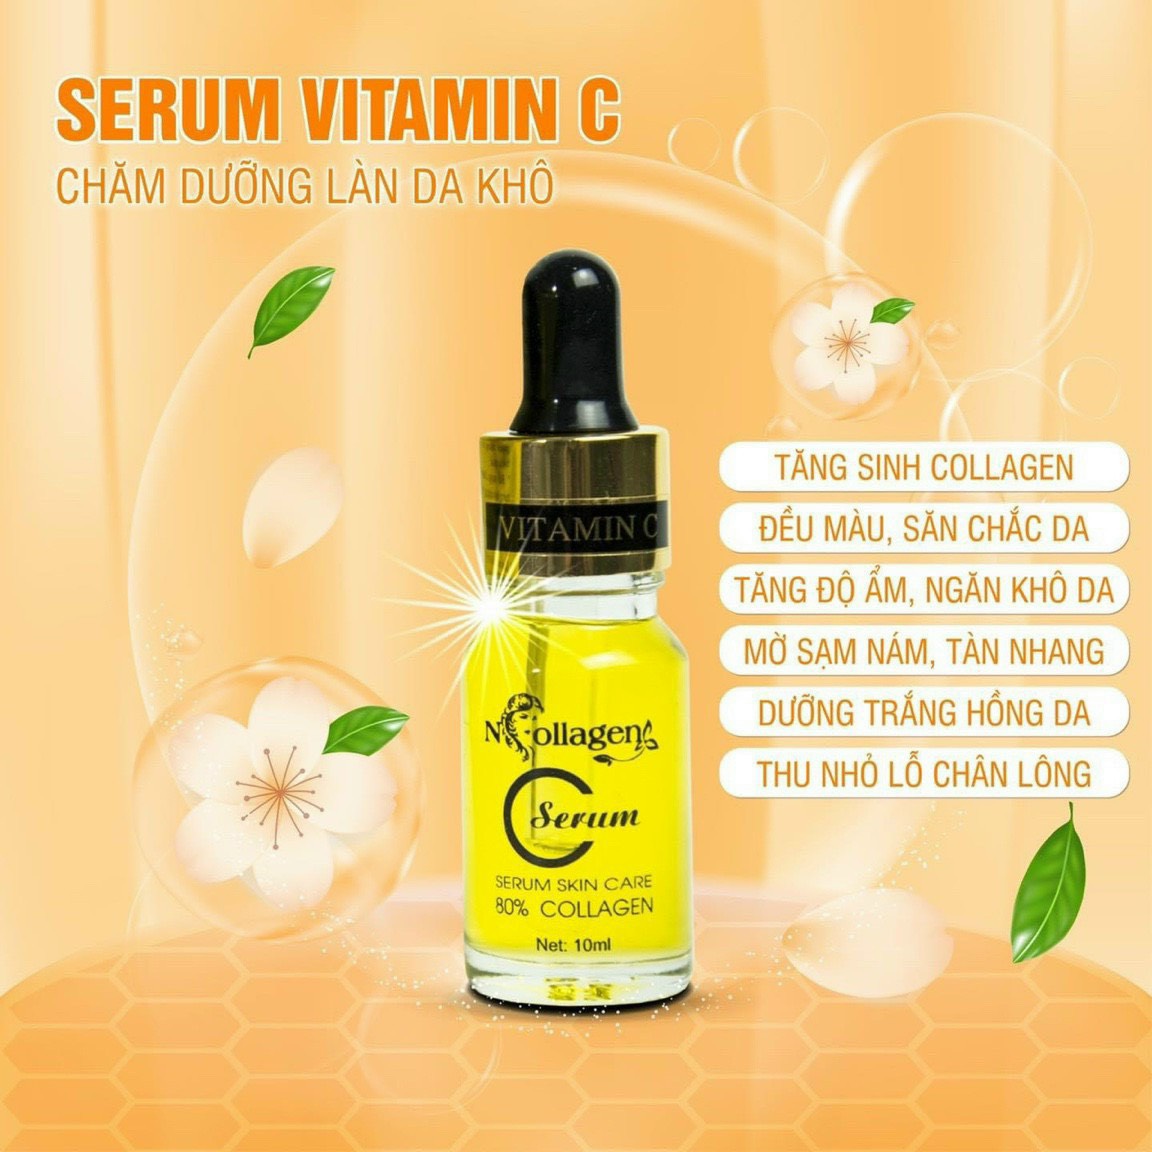 Serum Vitamin C độc chiêu chăm dưỡng vạn làn da khô